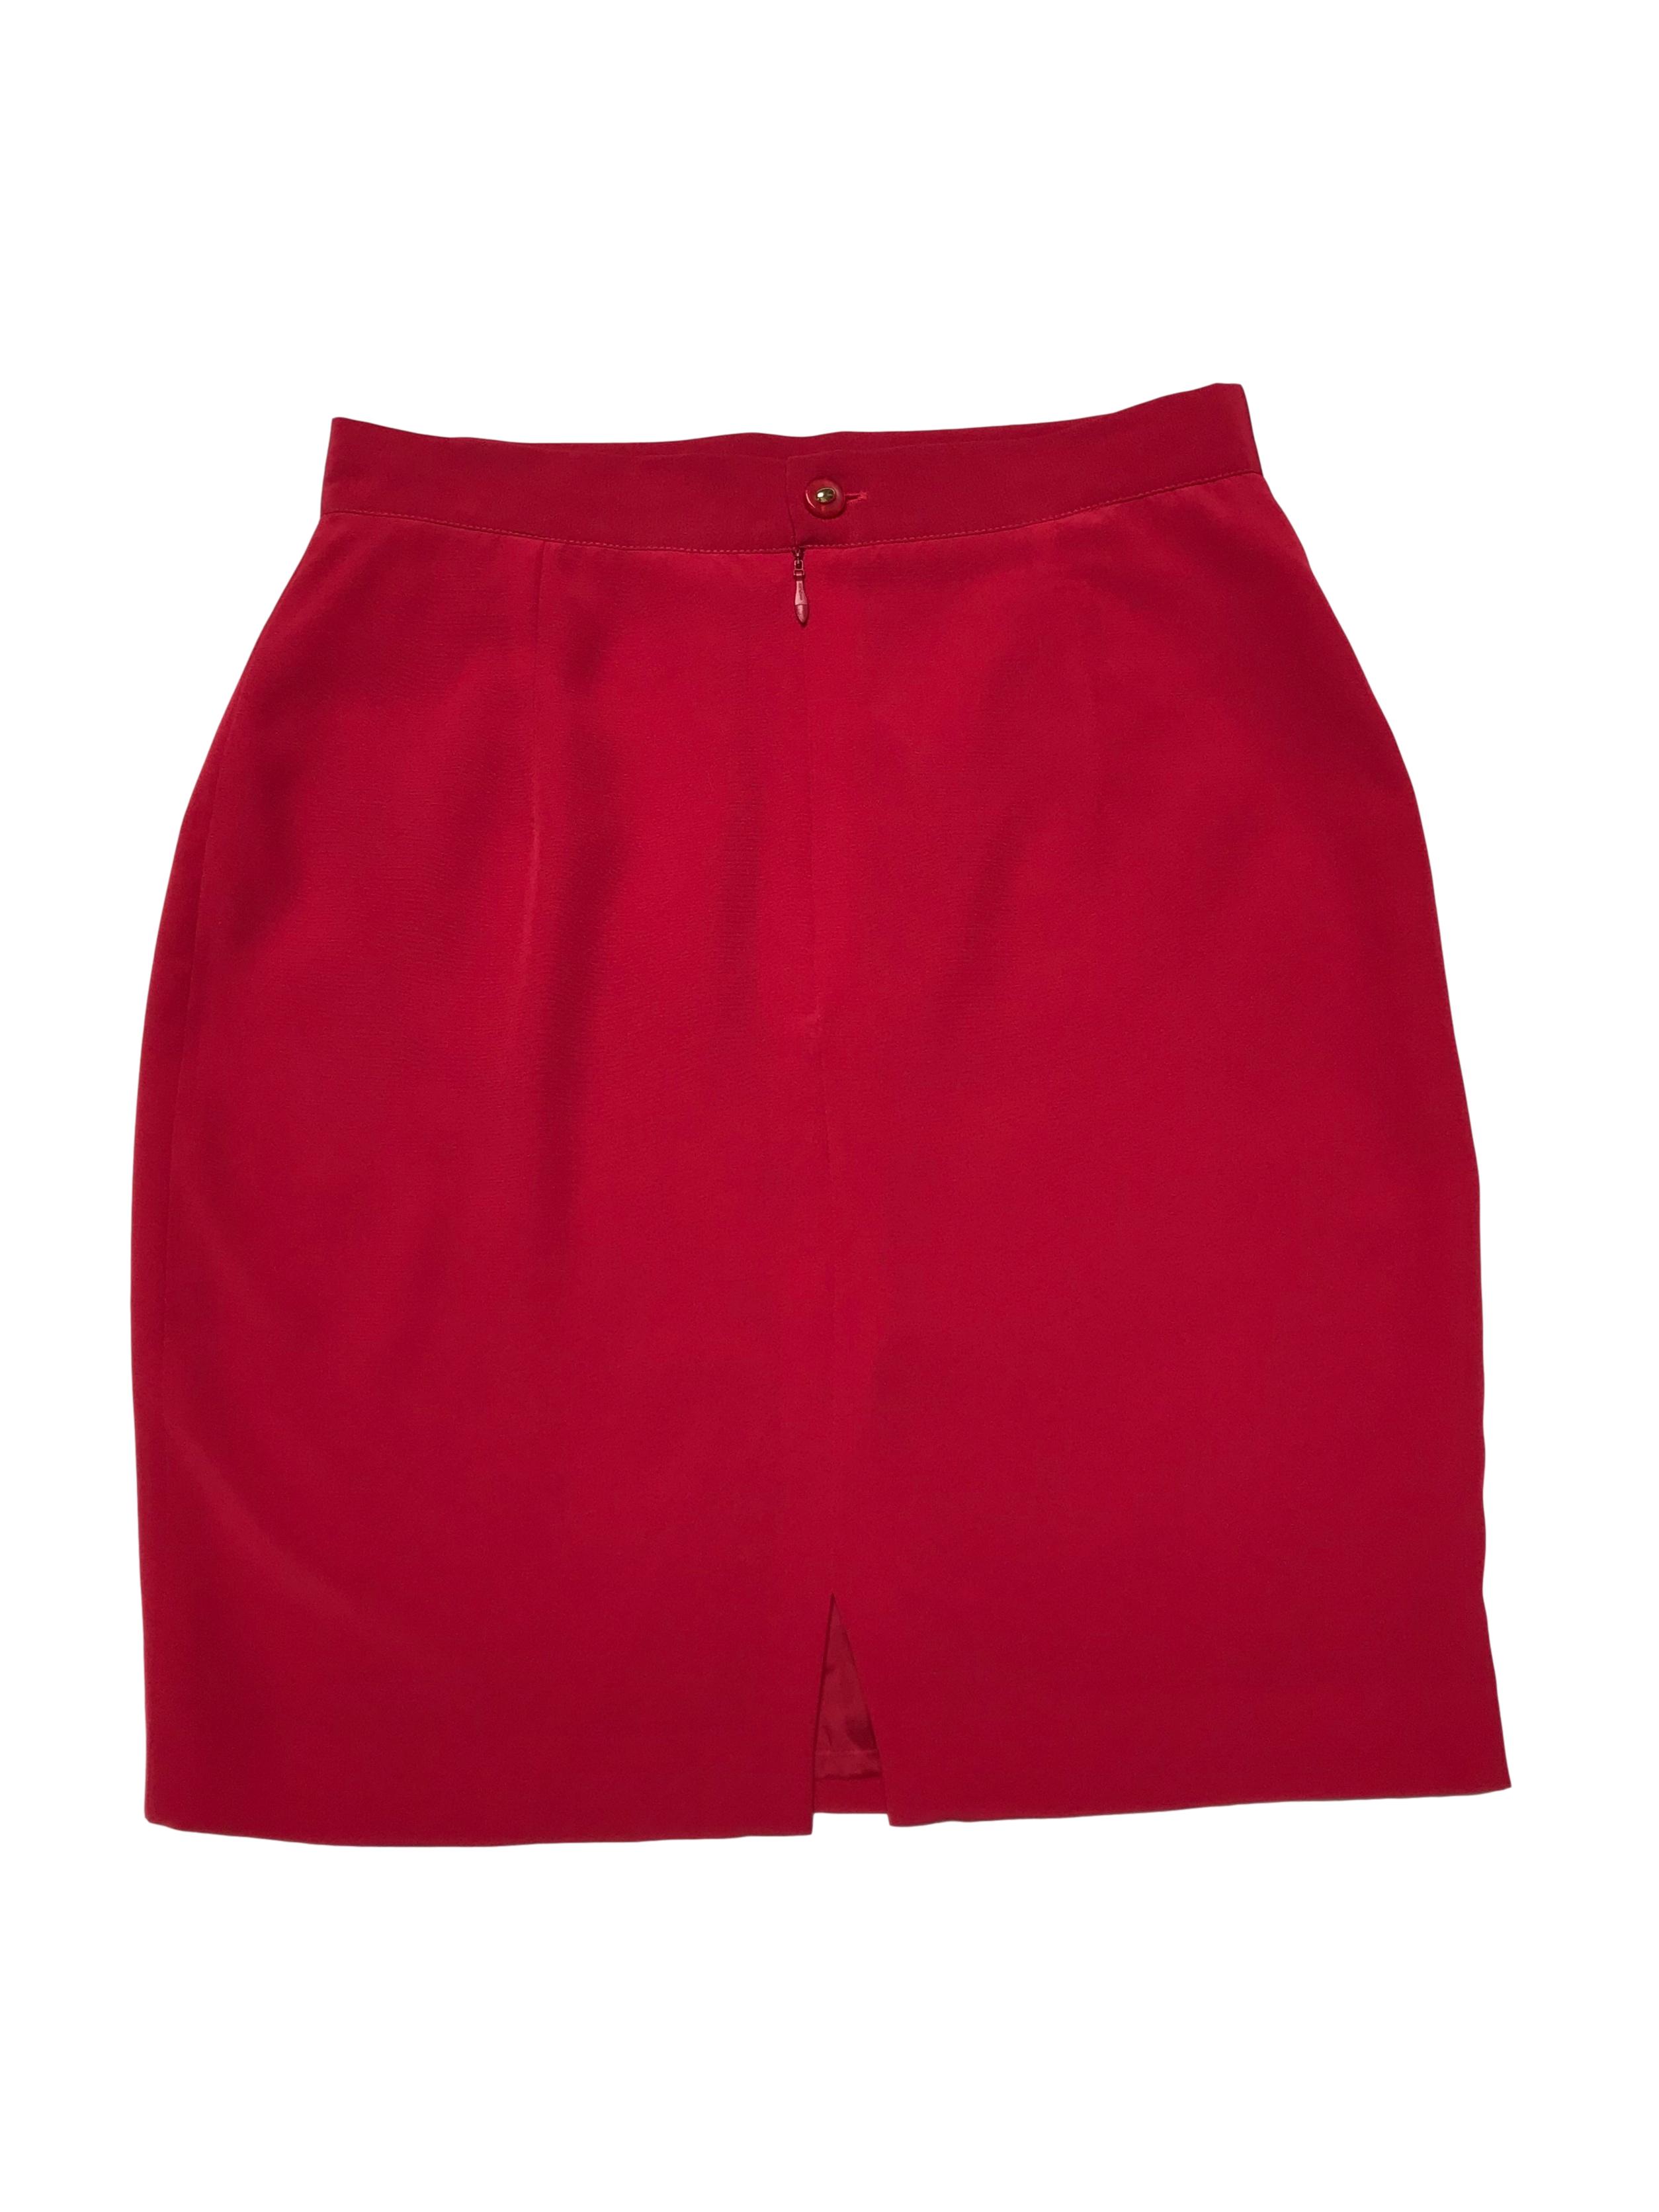 Falda vintage roja con botón, cierre y abertura posterior, lleva forro. Cintura 70cm Largo 49cm. Tiene blazer conjunto.